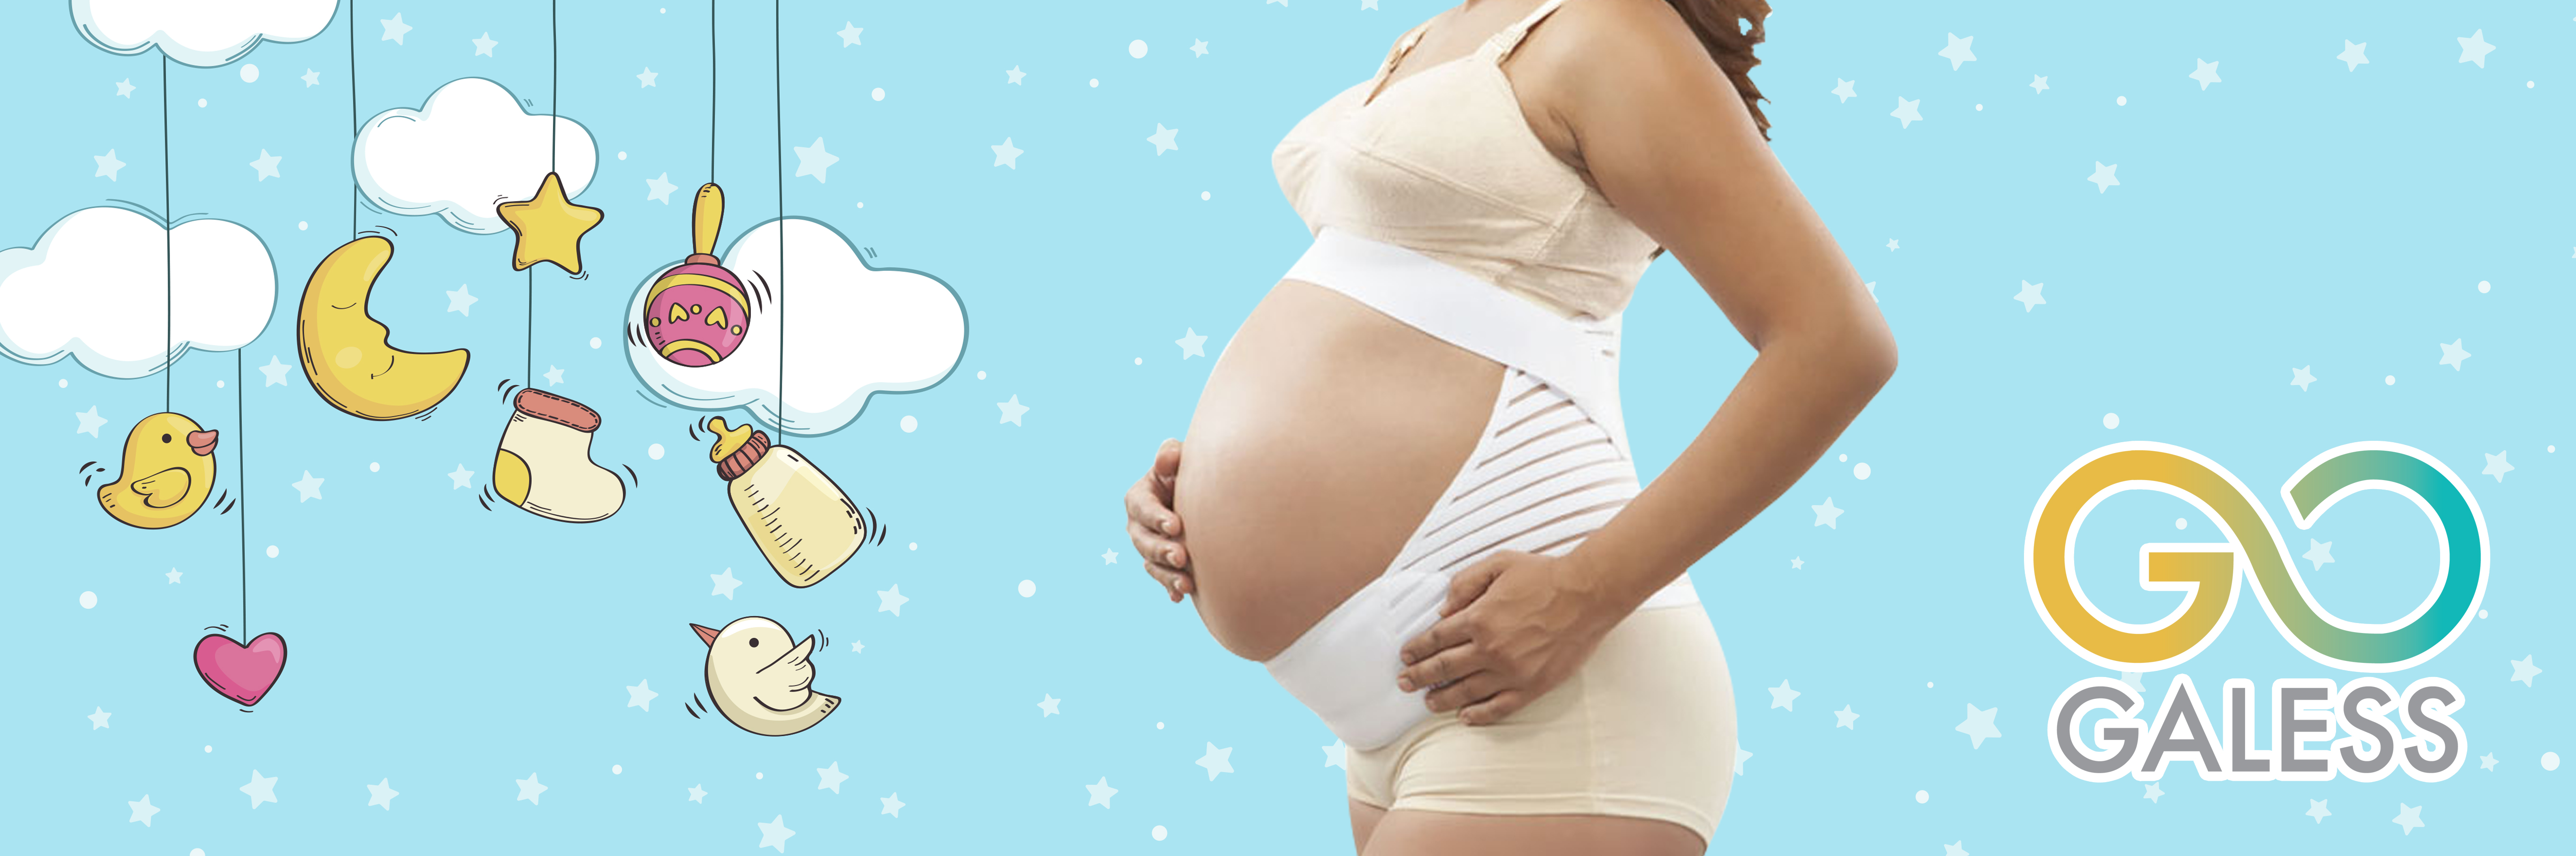 Logra un vientre plano: beneficios de la liposucción y